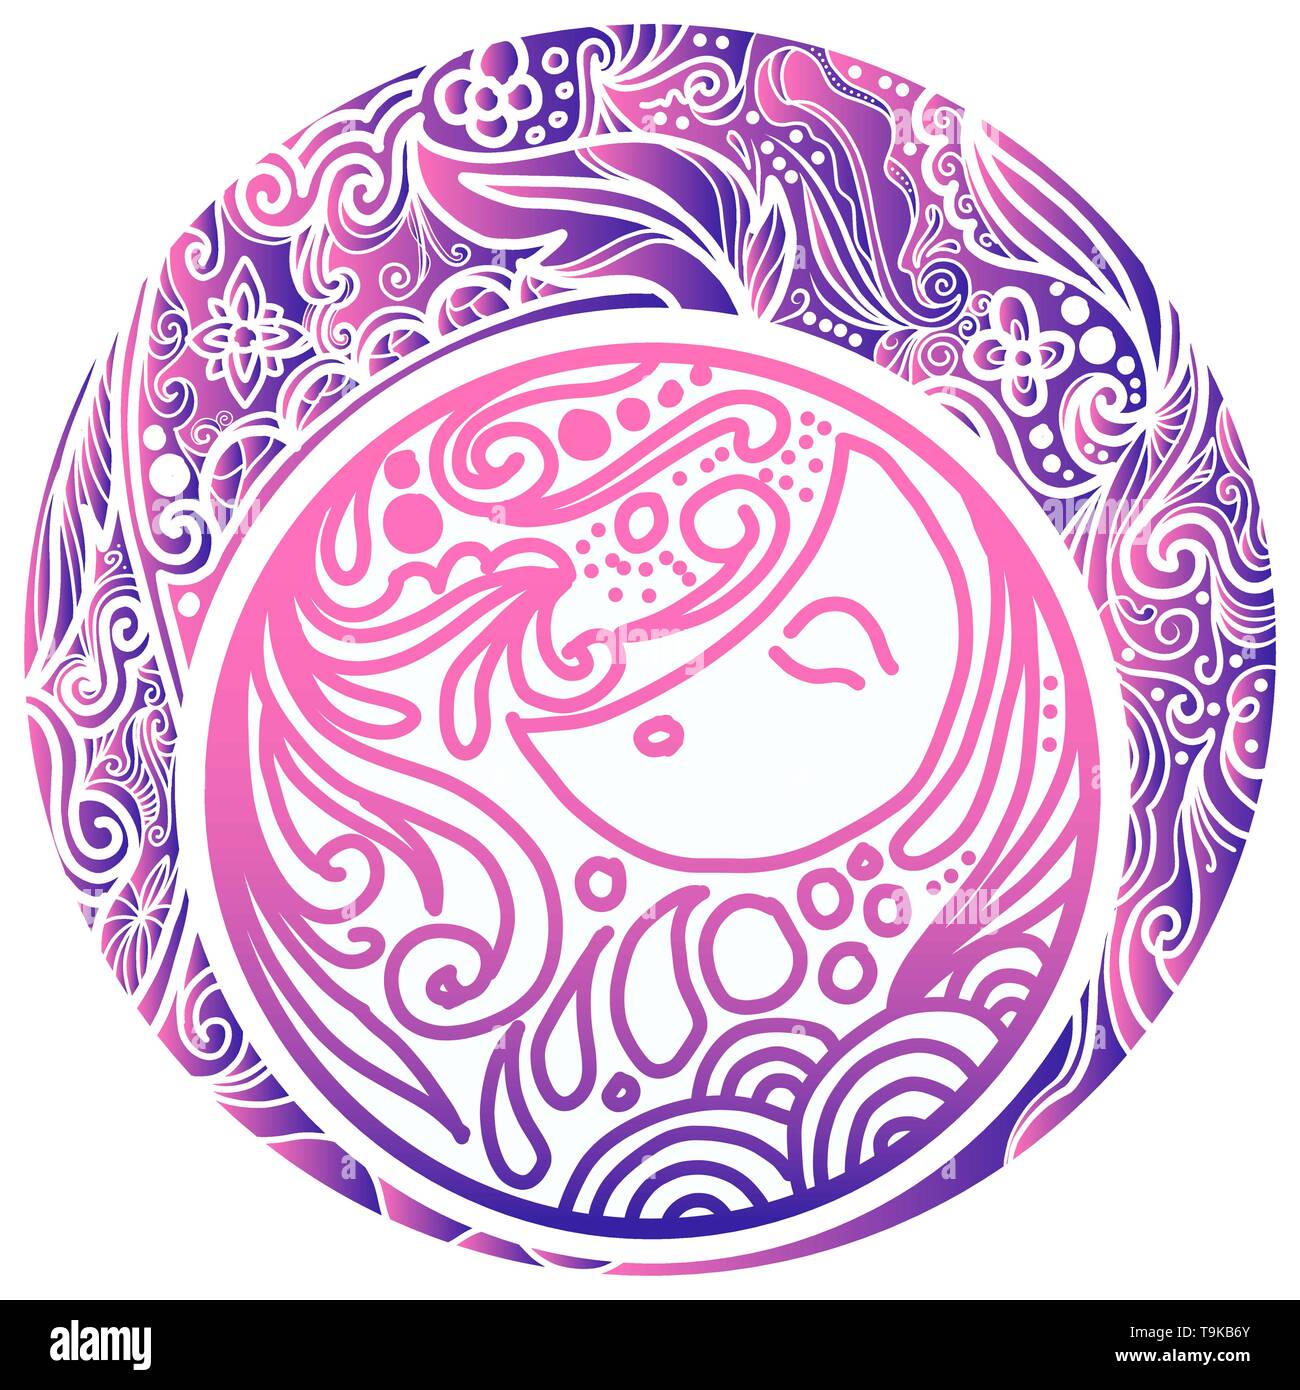 Zeichnung vintage Abzeichen über Nacht und Traum, Löschen und Linien mit violettem Farbverlauf Stock Vektor